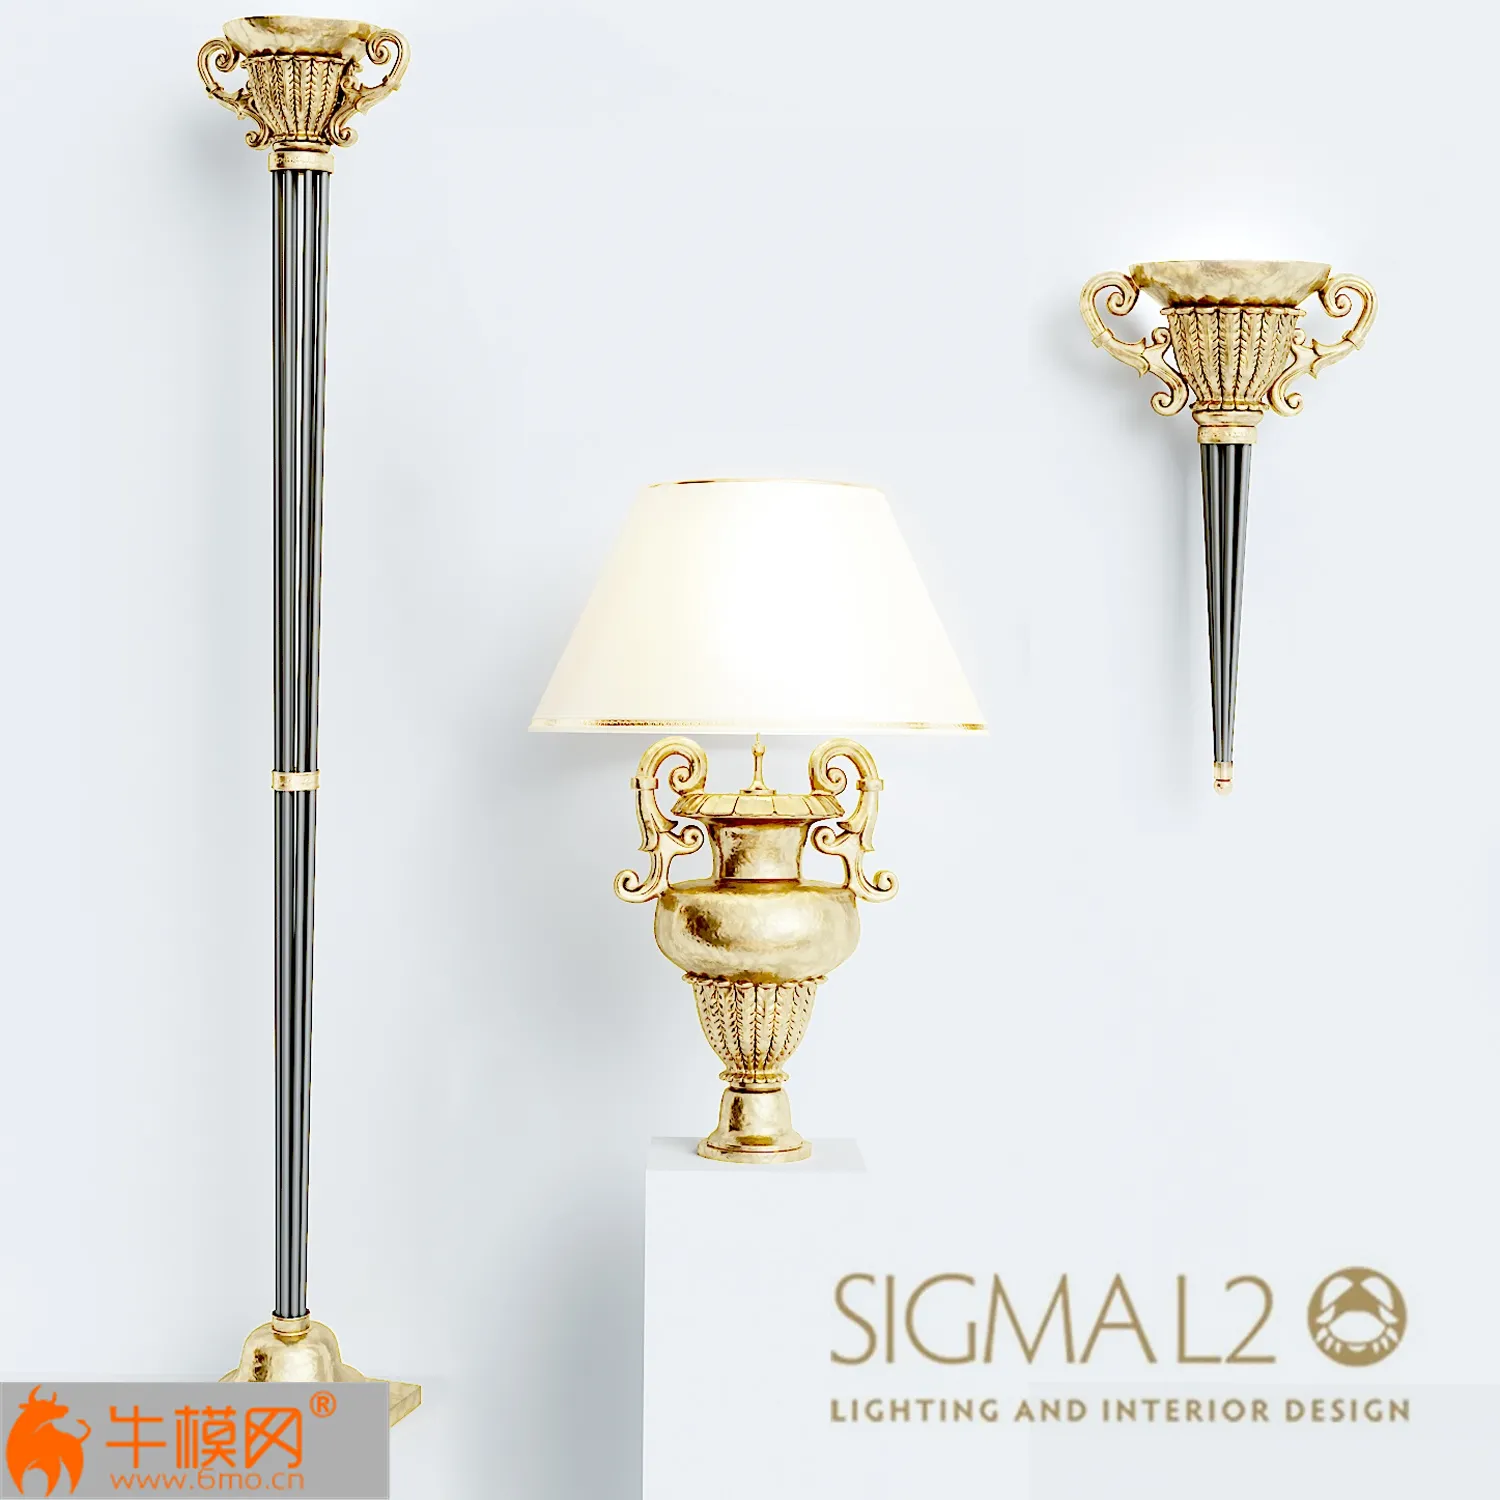 SIGMA L2 Medicea collection – 2859